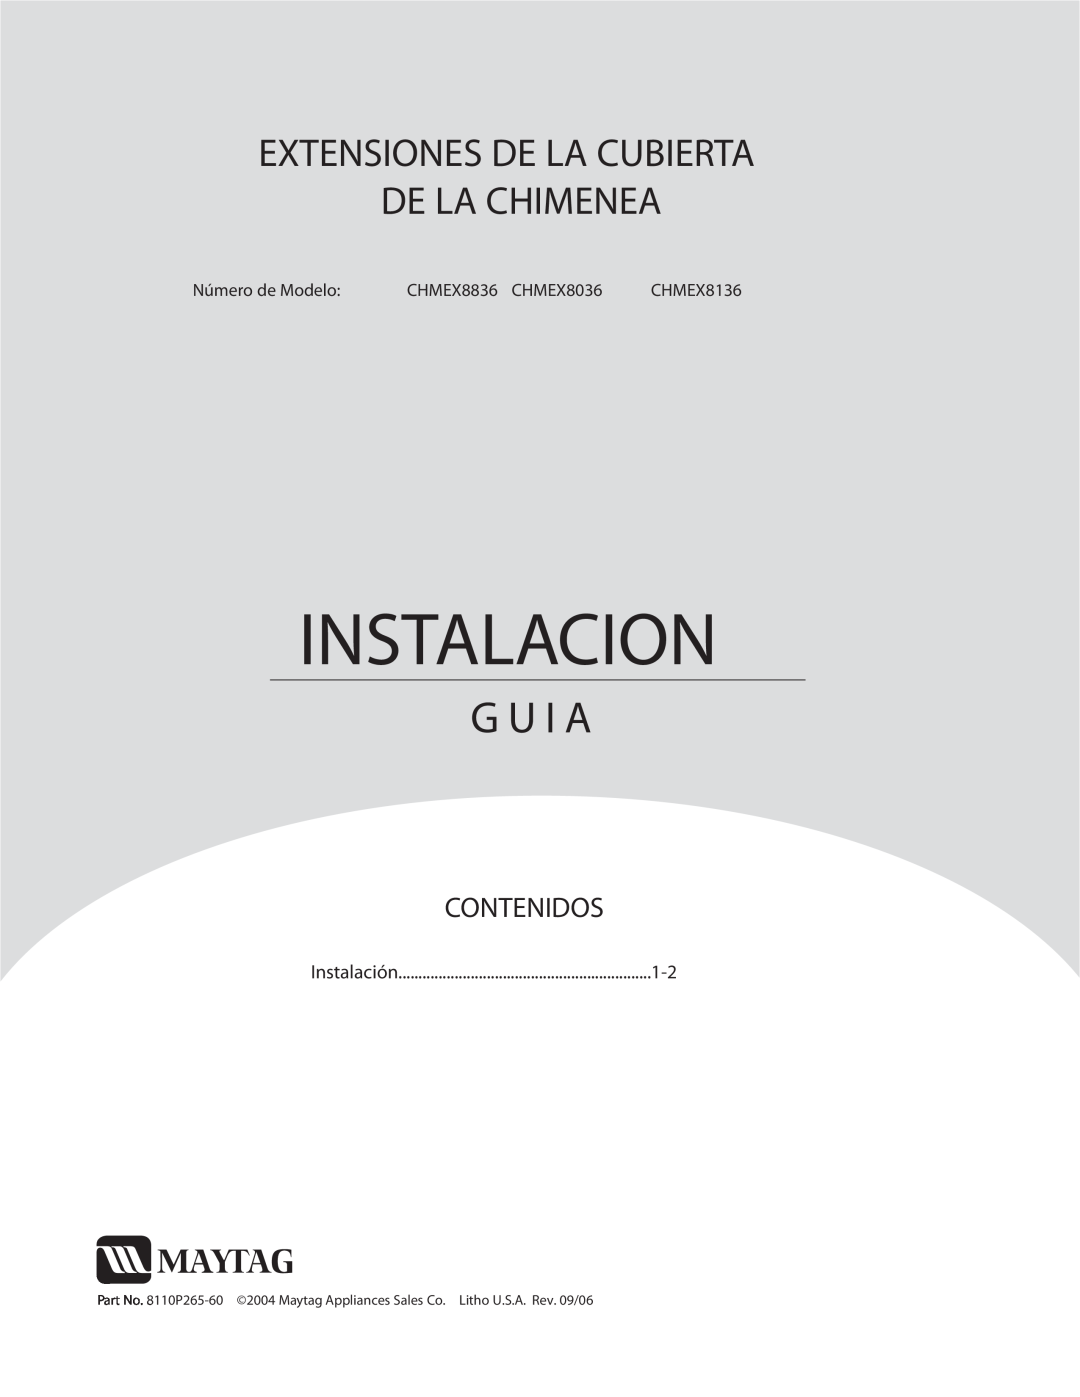 Maytag CHMEX8036, CHMEX8836 Instalacion, G U I A, Extensiones De La Cubierta De La Chimenea, Contenidos, Número de Modelo 